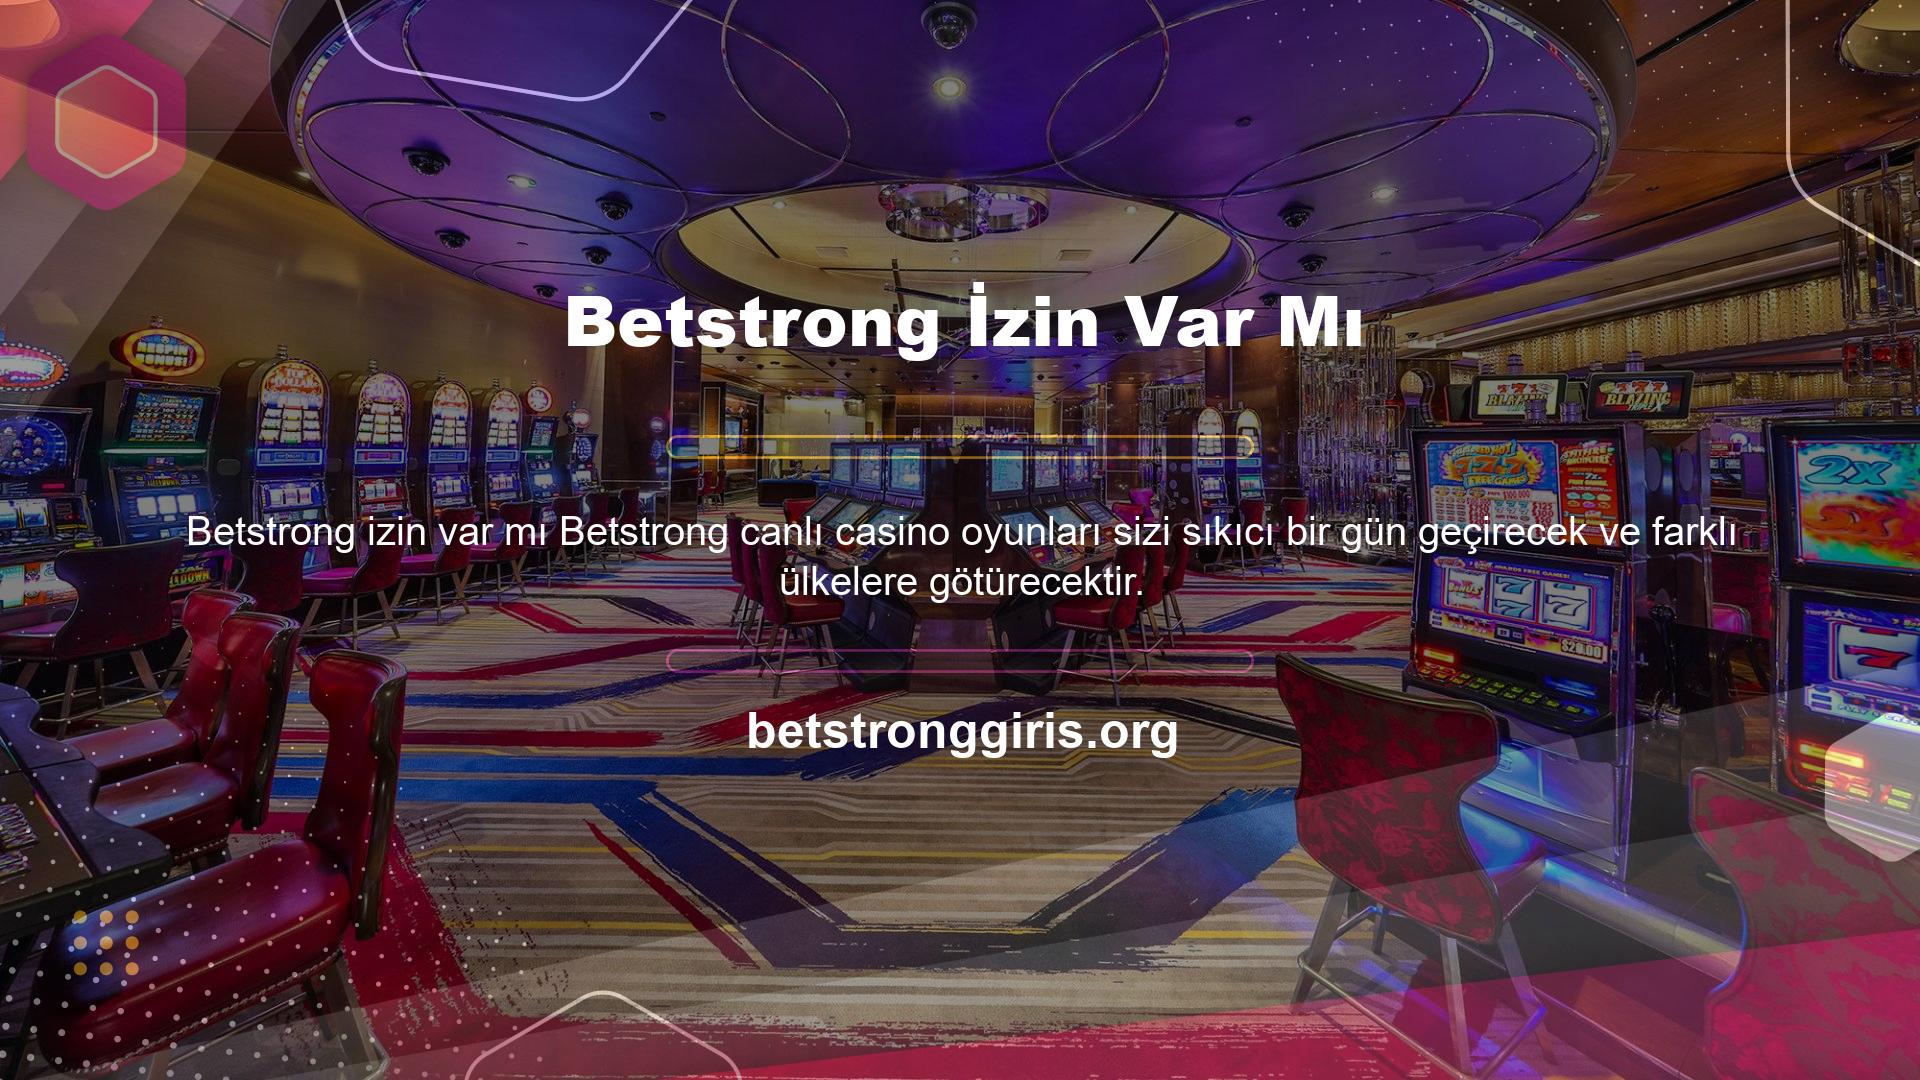 Platformda onlarca farklı canlı casino içeriği bulunmaktadır